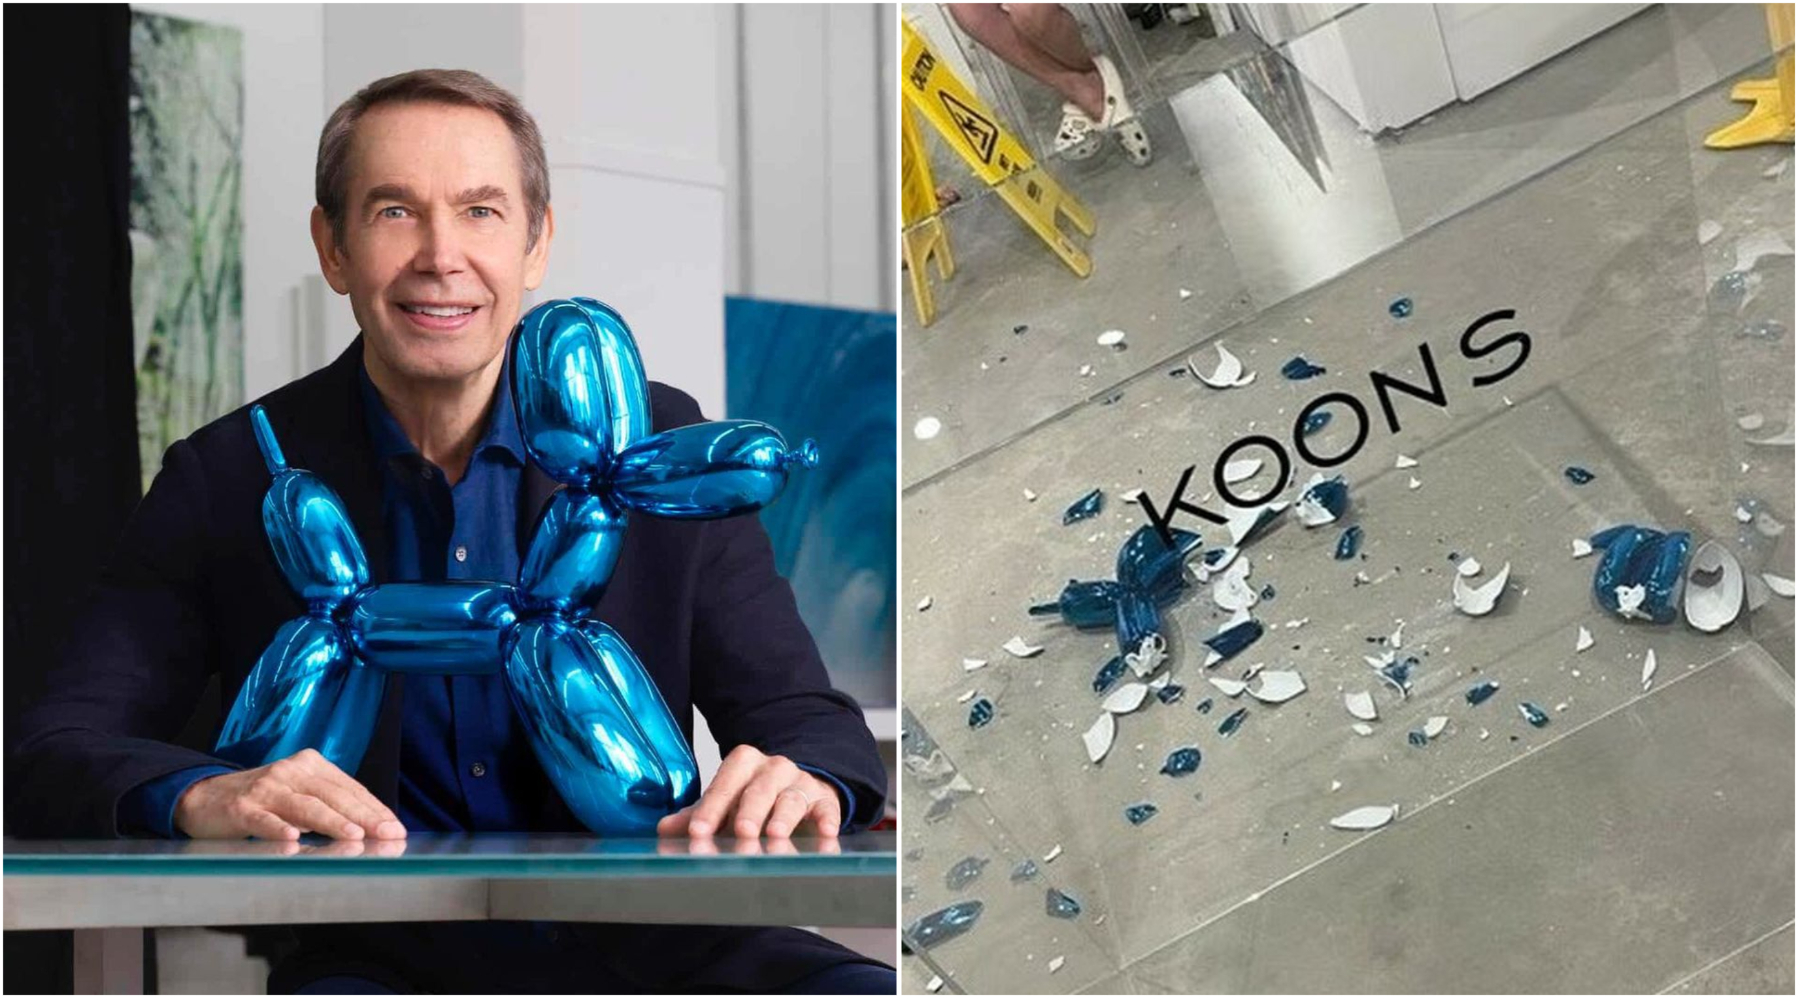 Posetilac slučajno razbio Jeff Koons „Balloon dog“ skulpturu vrednu 42 hiljade dolara